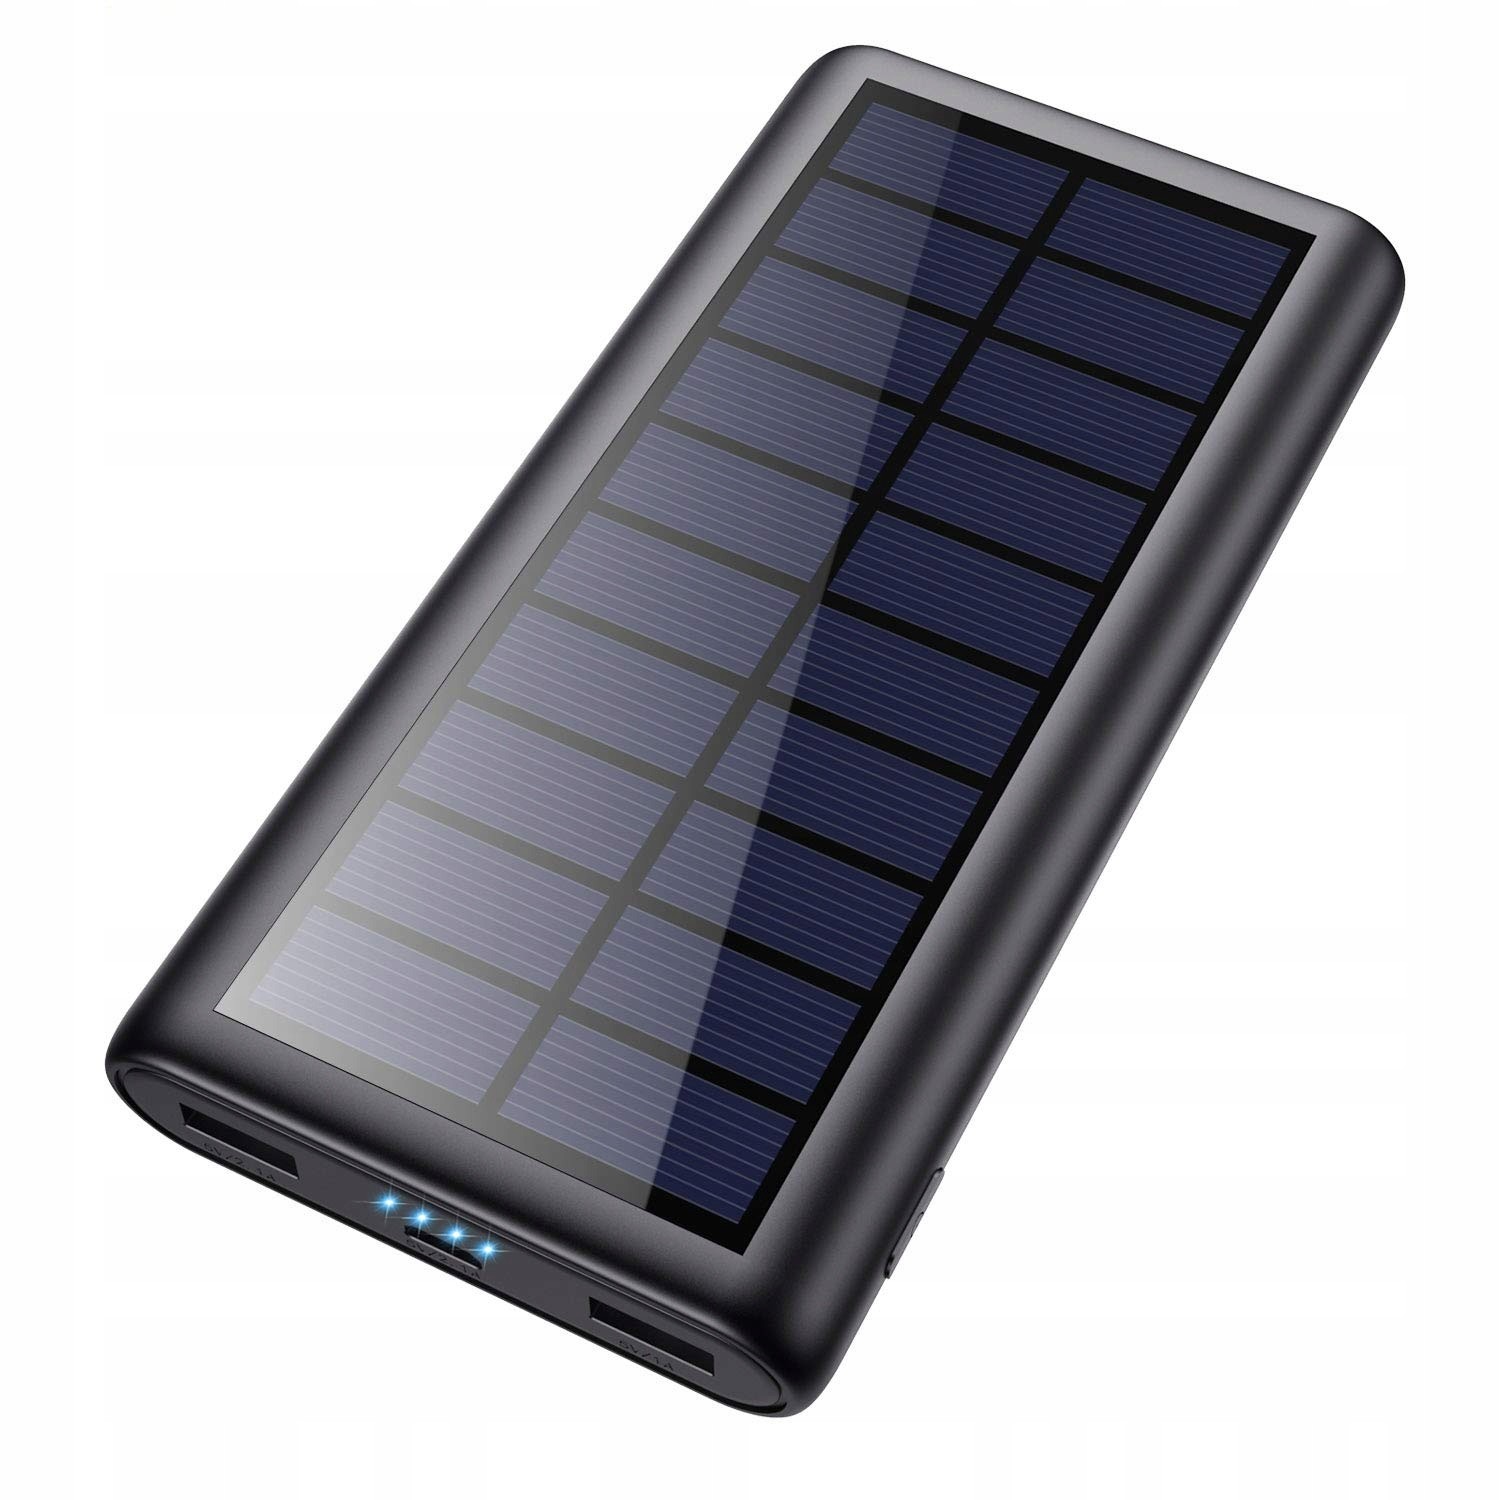 Powerbanka 26800 mAh solární nabíjení Led diody